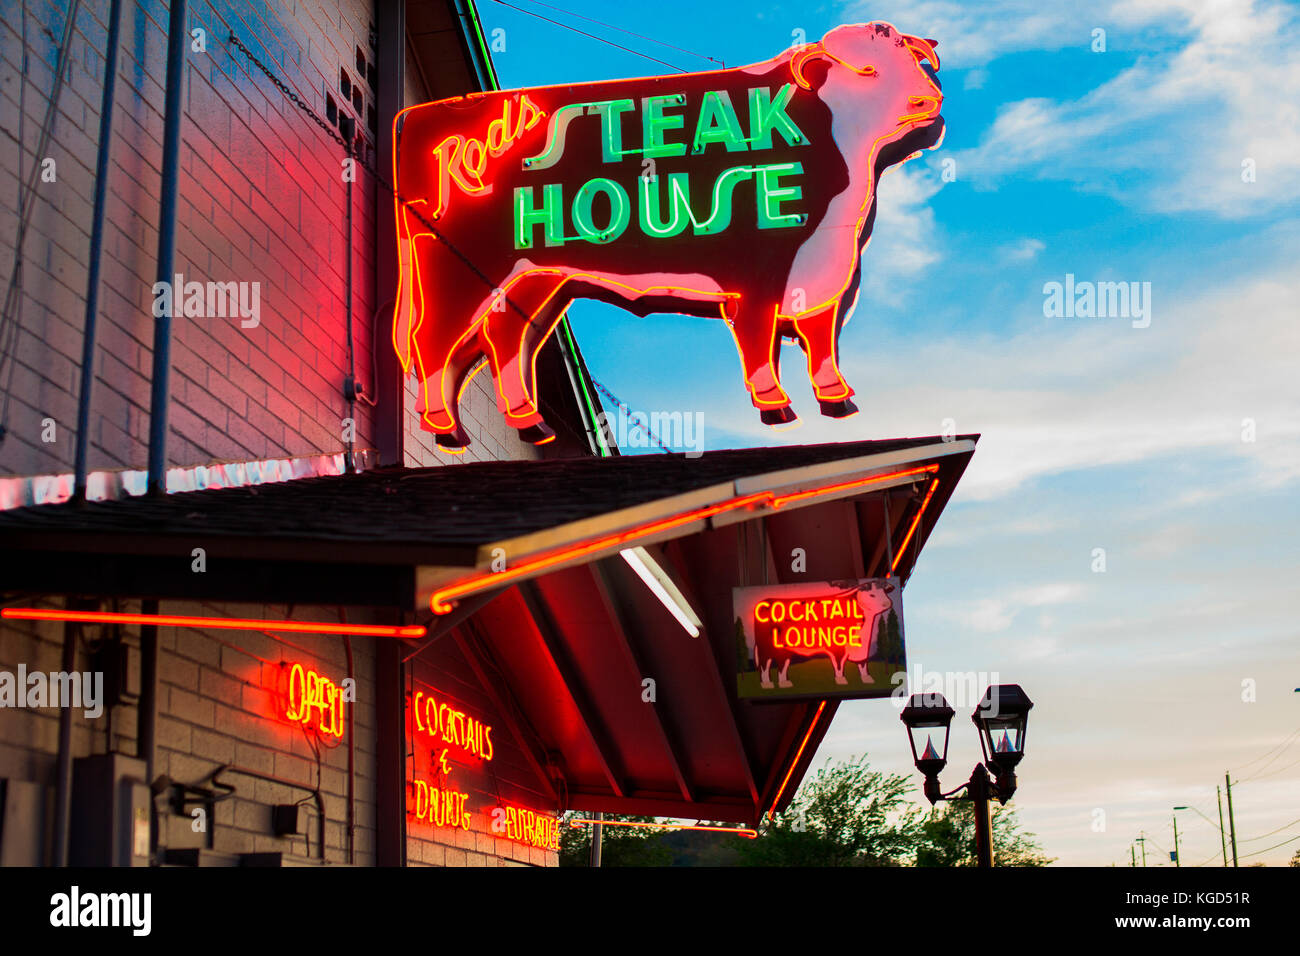 Steak house insegna al neon. Foto Stock